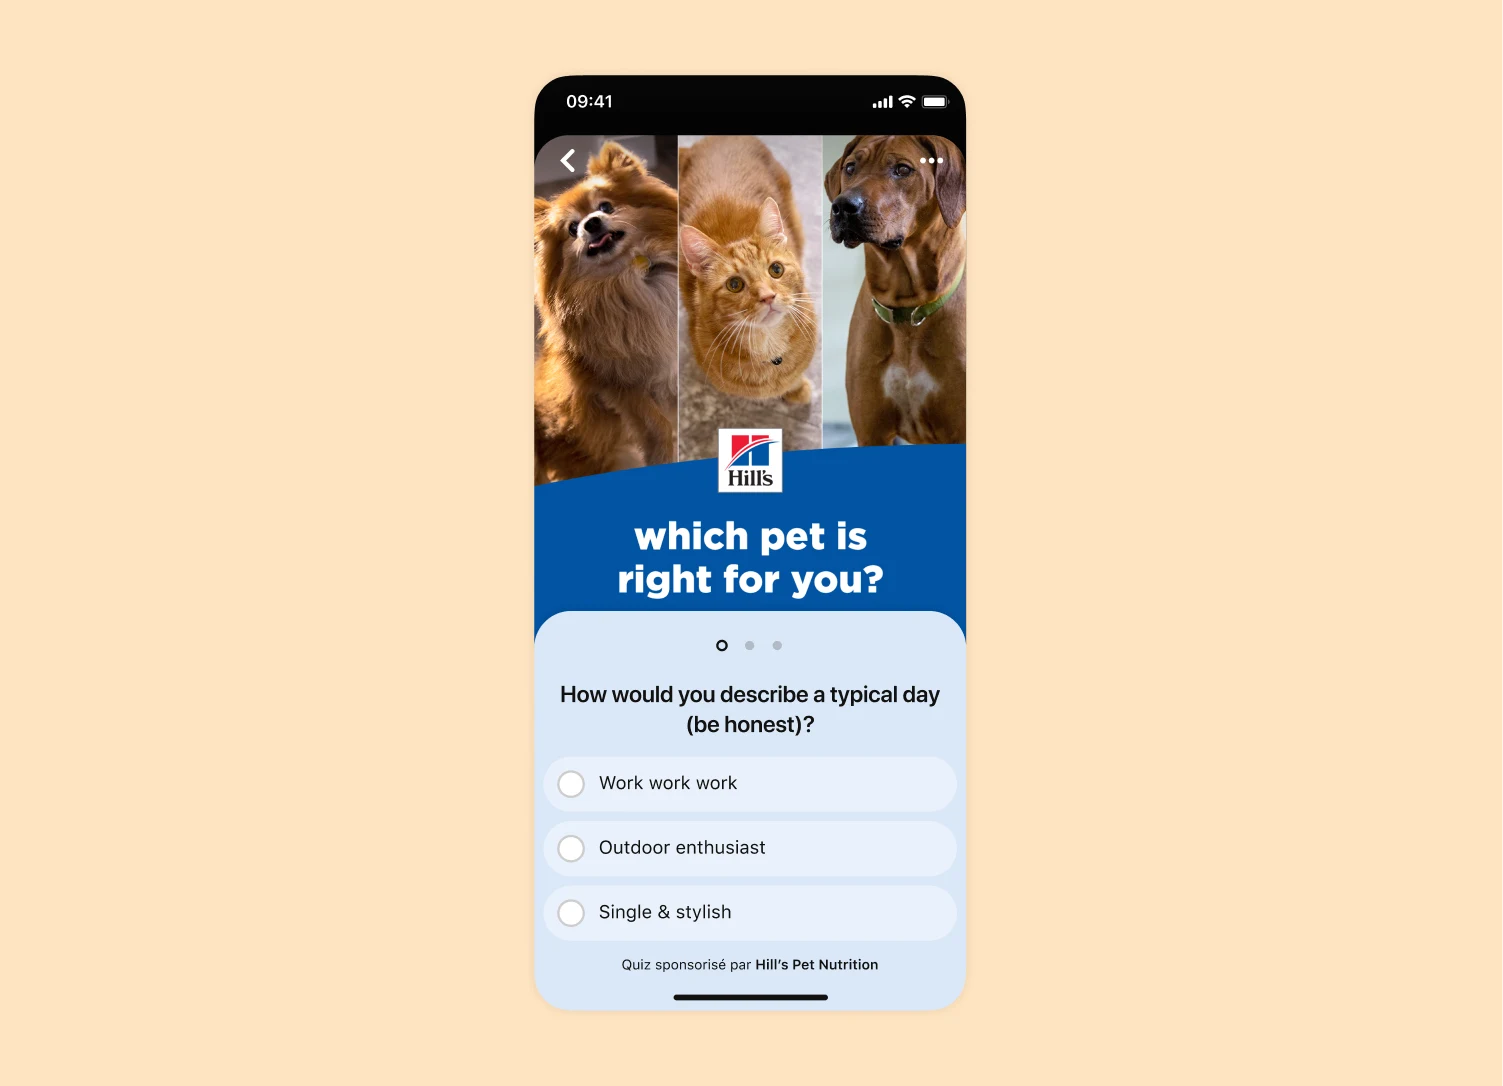 Capture d’écran de téléphone montrant une annonce quiz Pinterest pour la marque de nourriture pour animaux Hill’s Pet Nutrition.